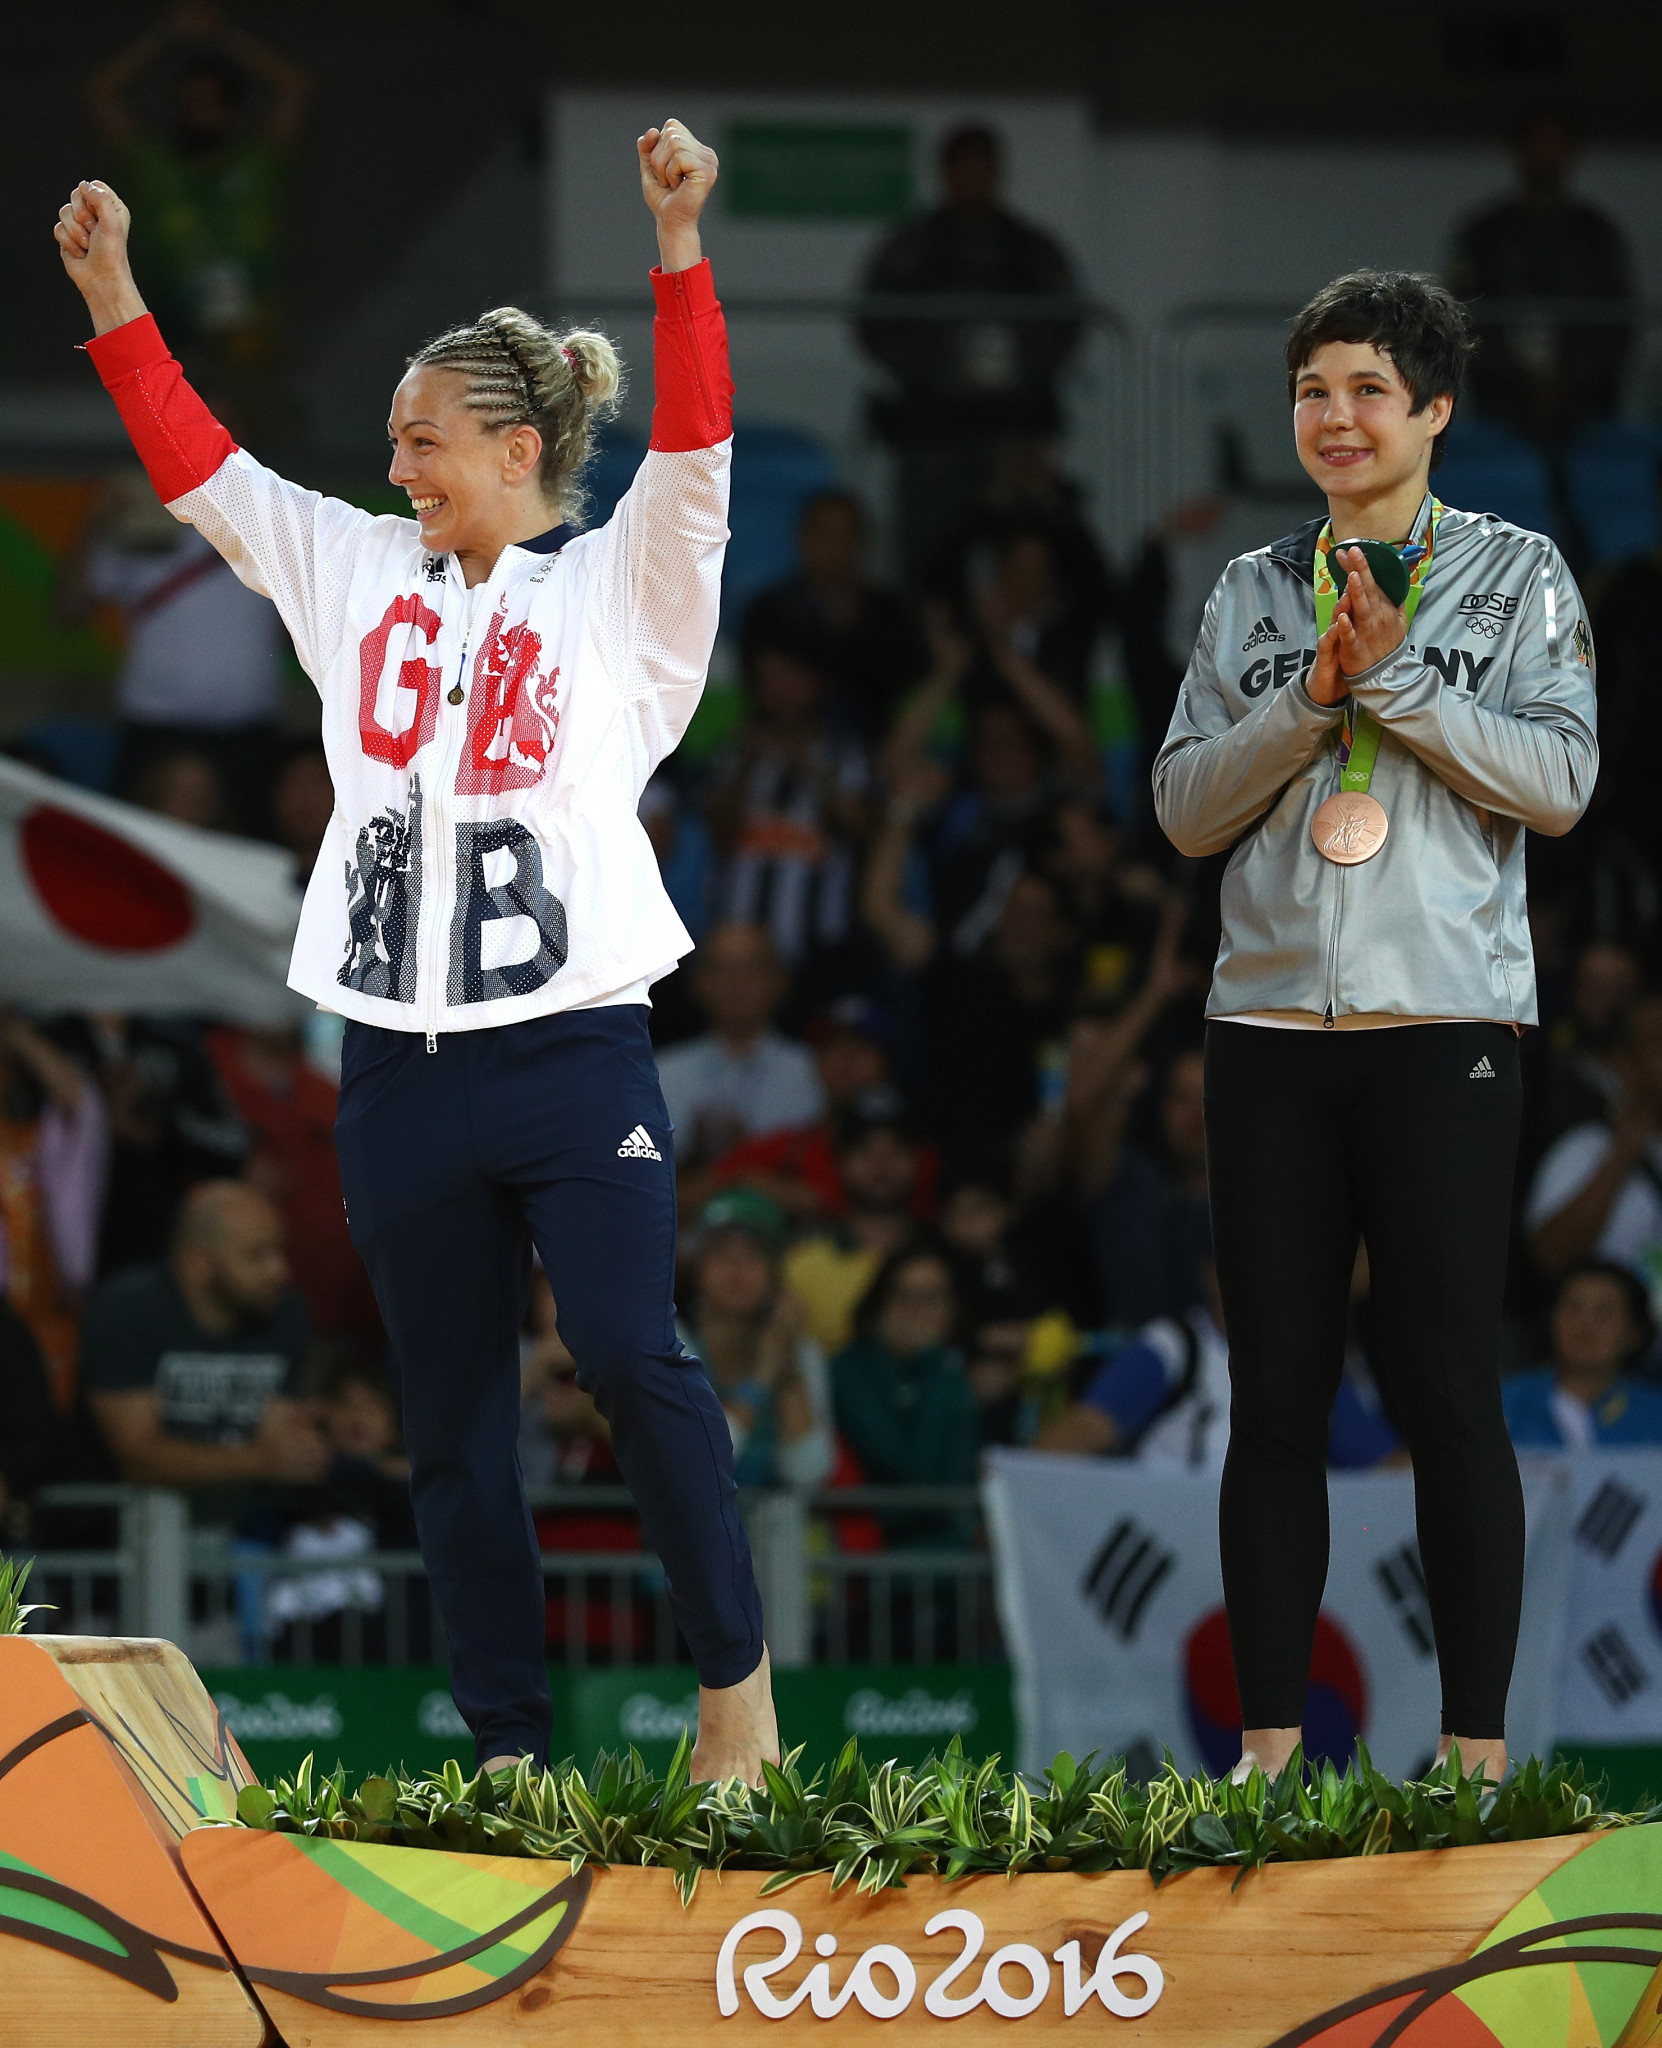 La judoka britannique Sally Conway, qui a remporté une médaille de bronze à Rio 2016, a annoncé aujourd'hui sa retraite du sport © Getty Images